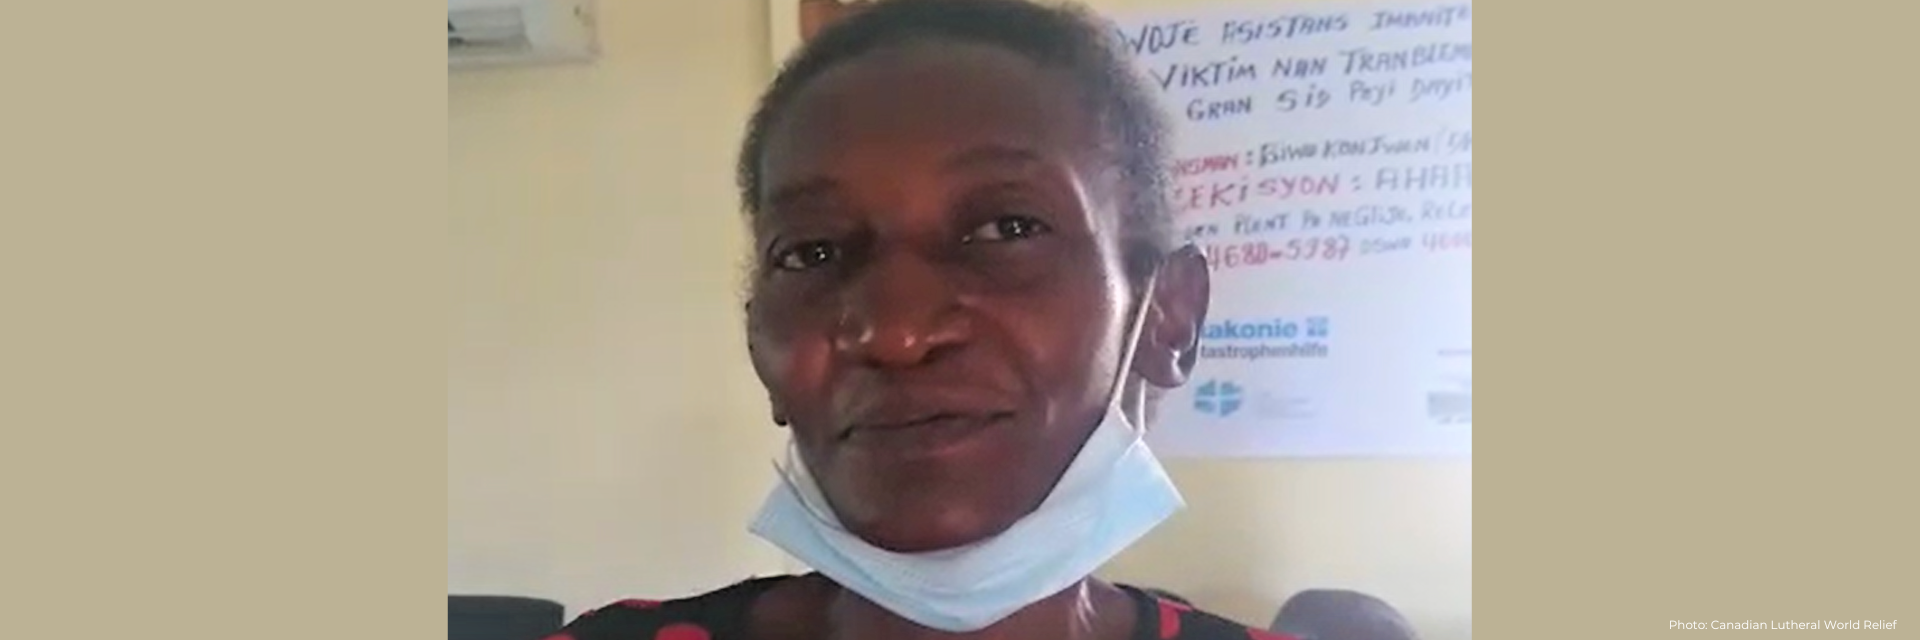 Haitian woman faces camera